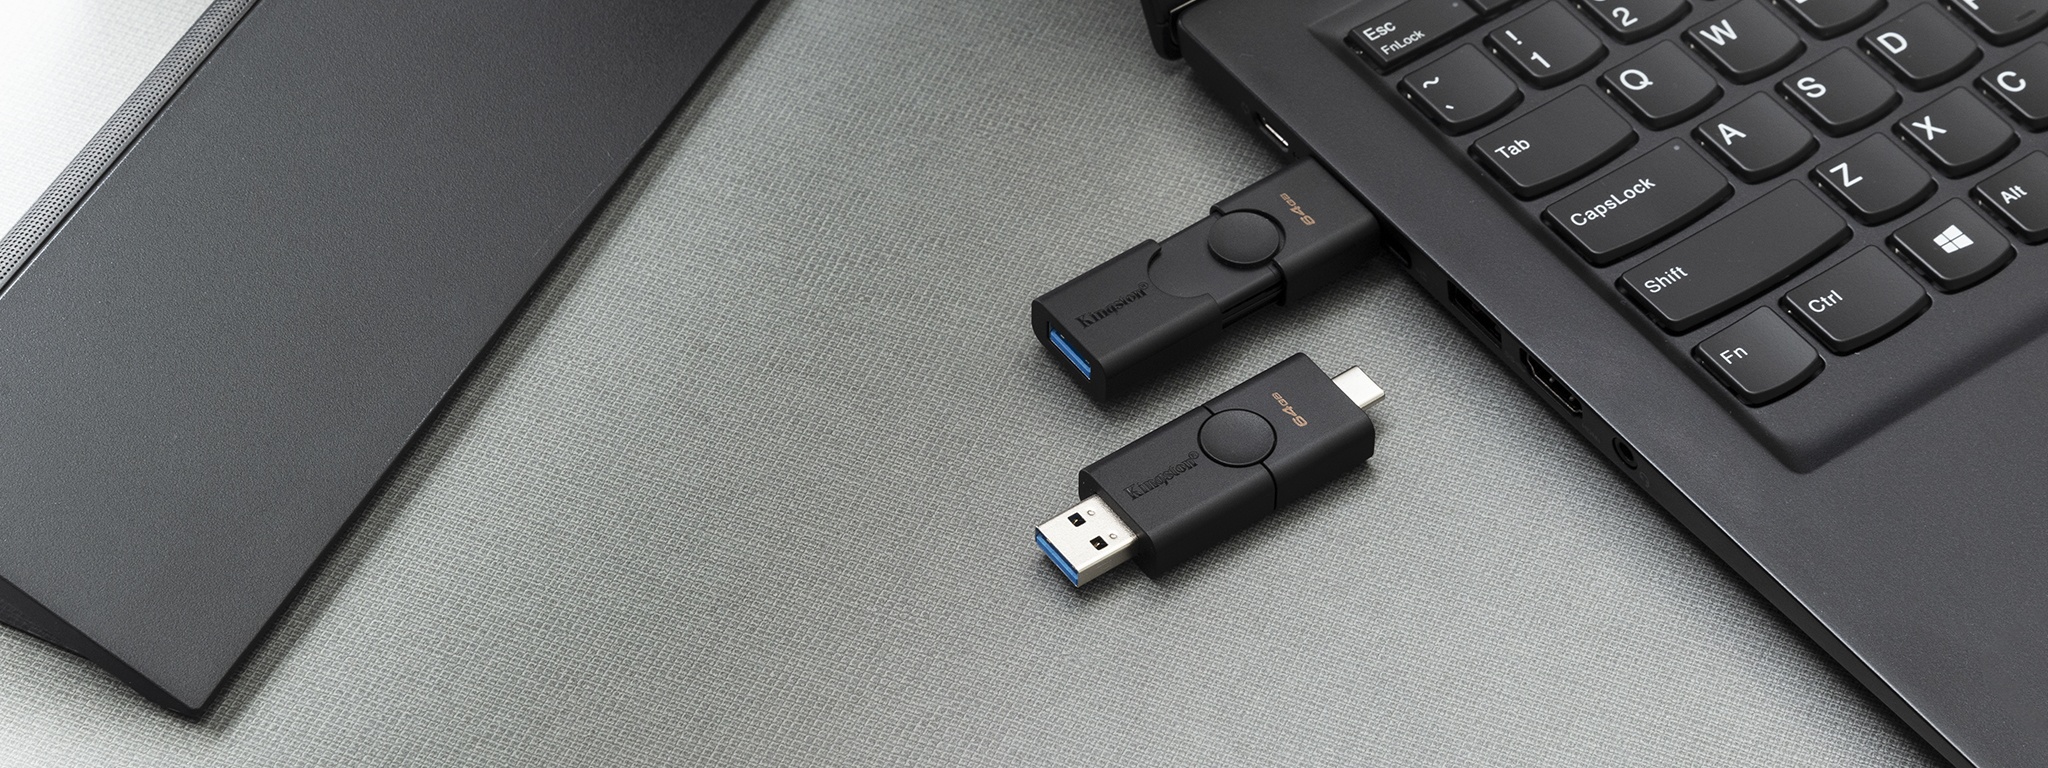 Độc đáo chiếc USB có "kíp nổ", cho phép tự phá hủy để bảo vệ dữ liệu